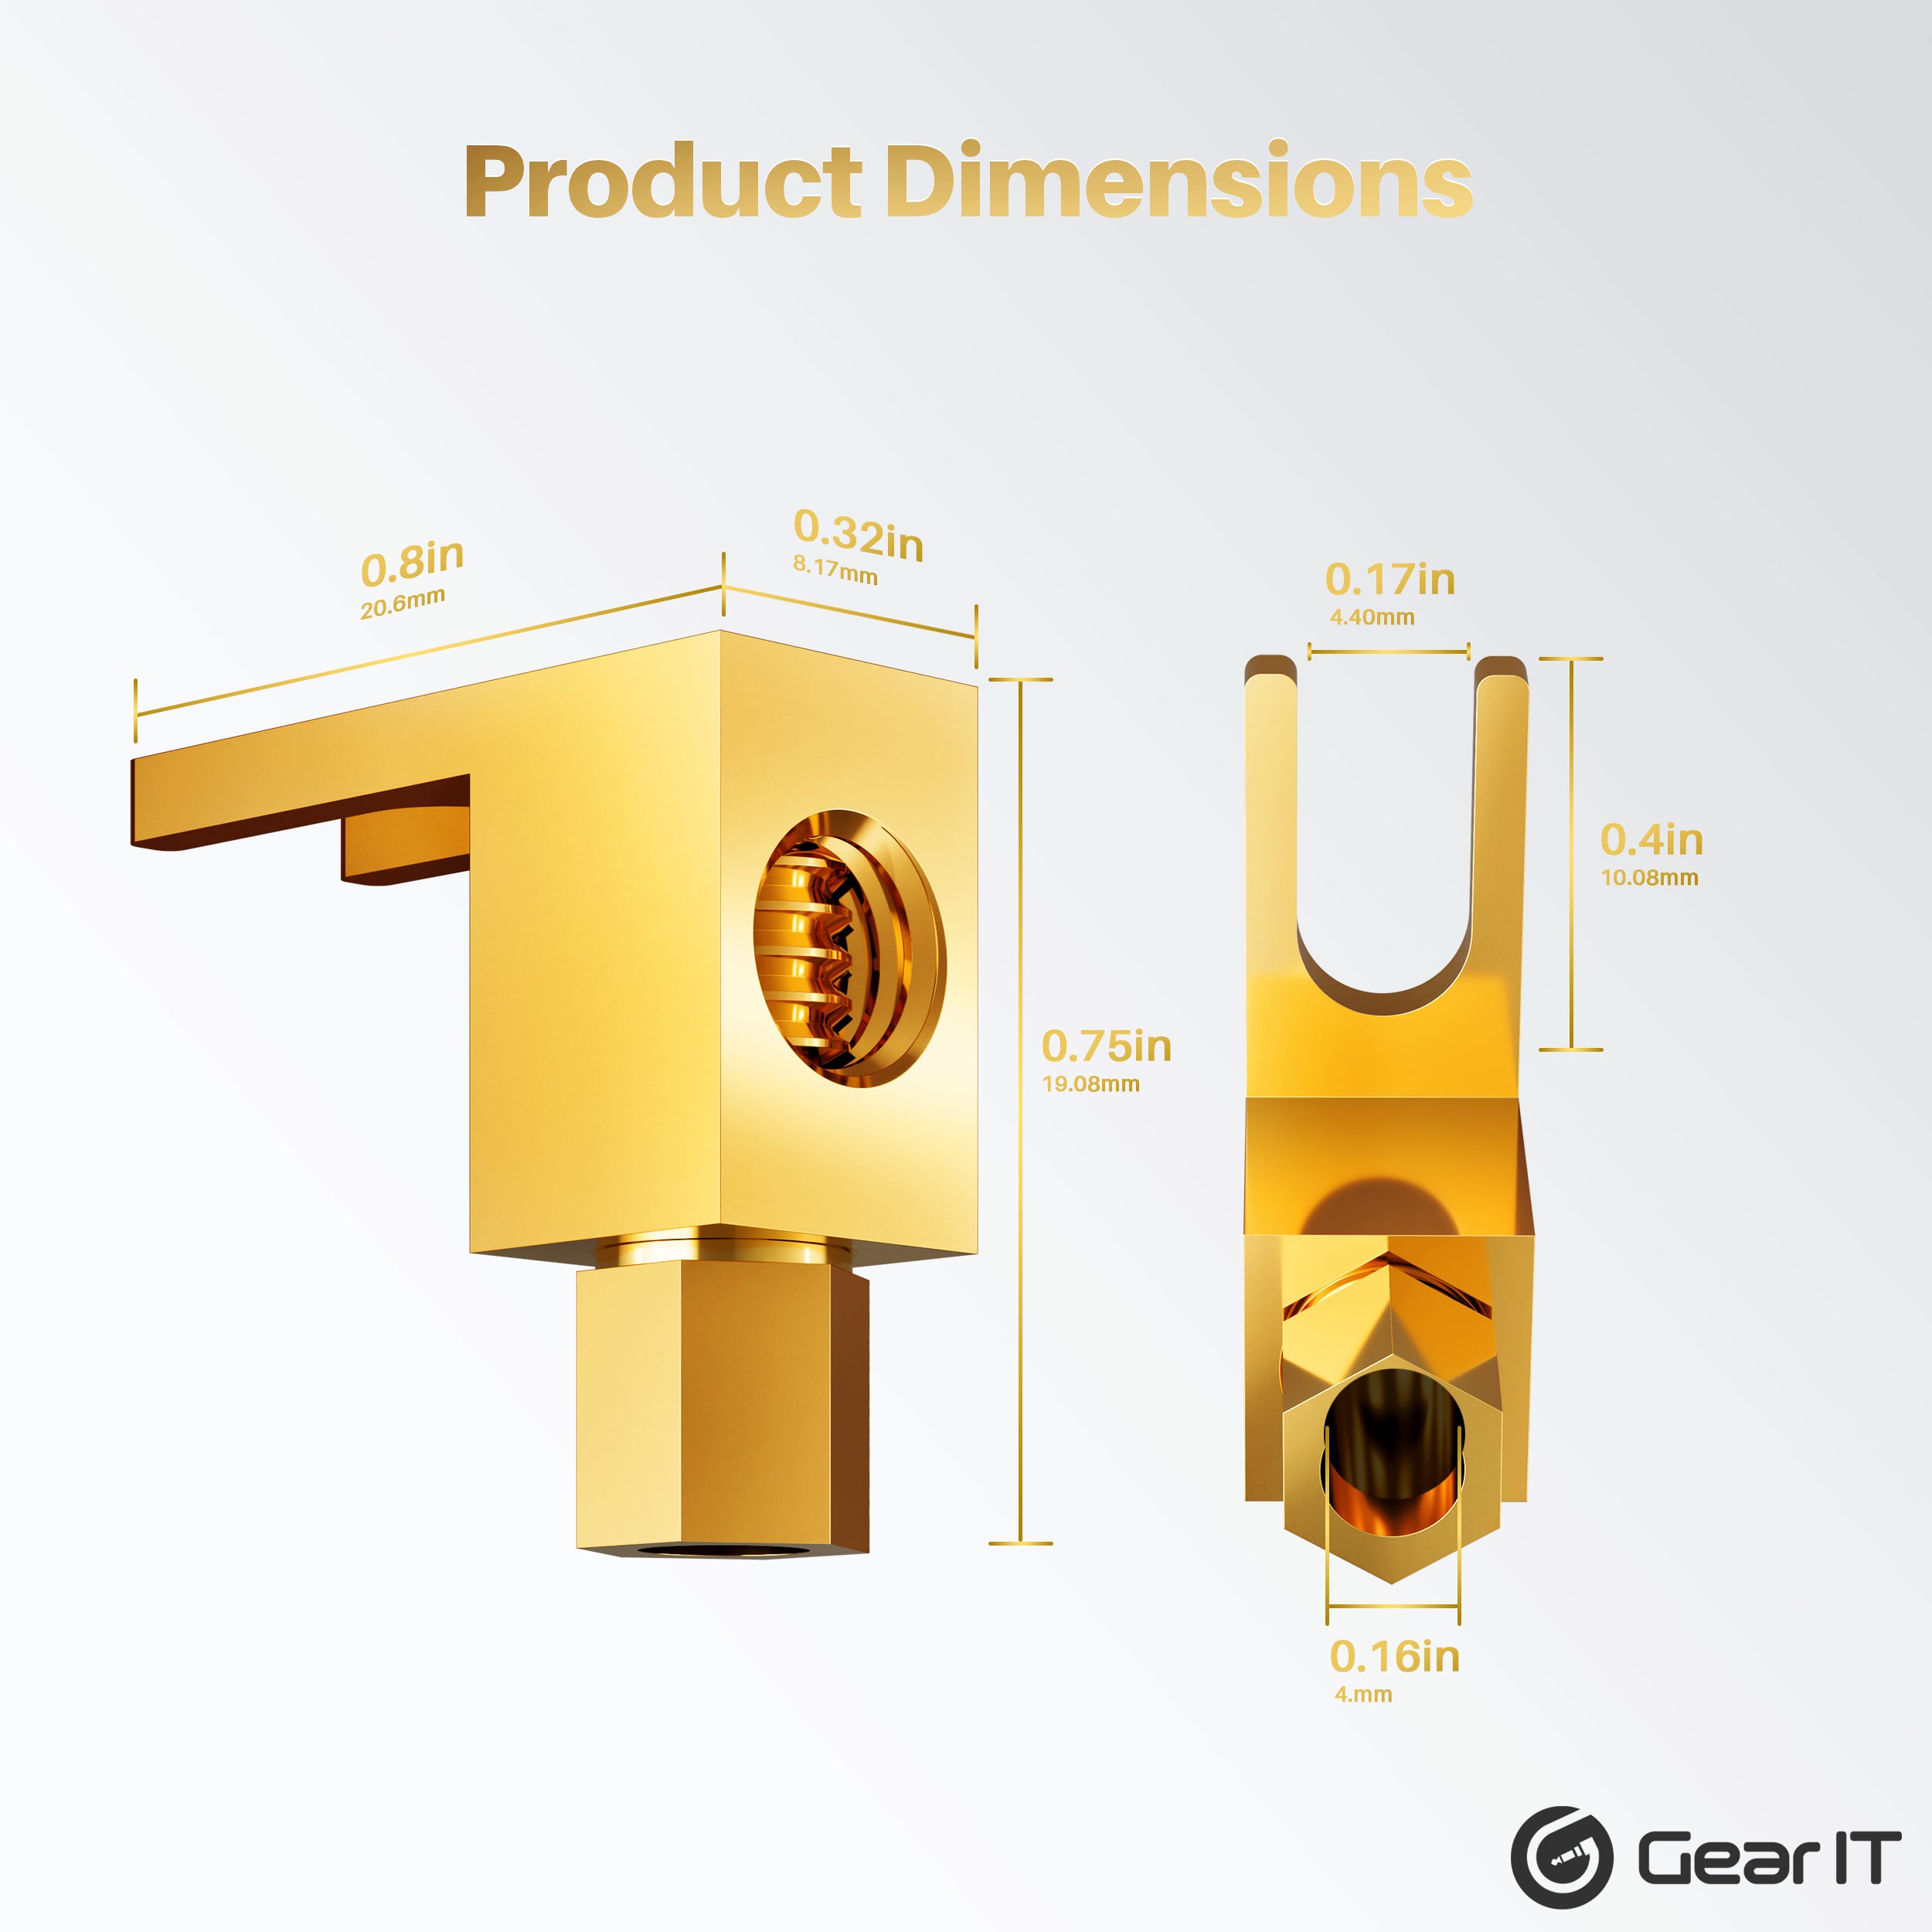 CMC 858-S-G 24K Gold-Plated Speaker AMP Binding Post (Pair)